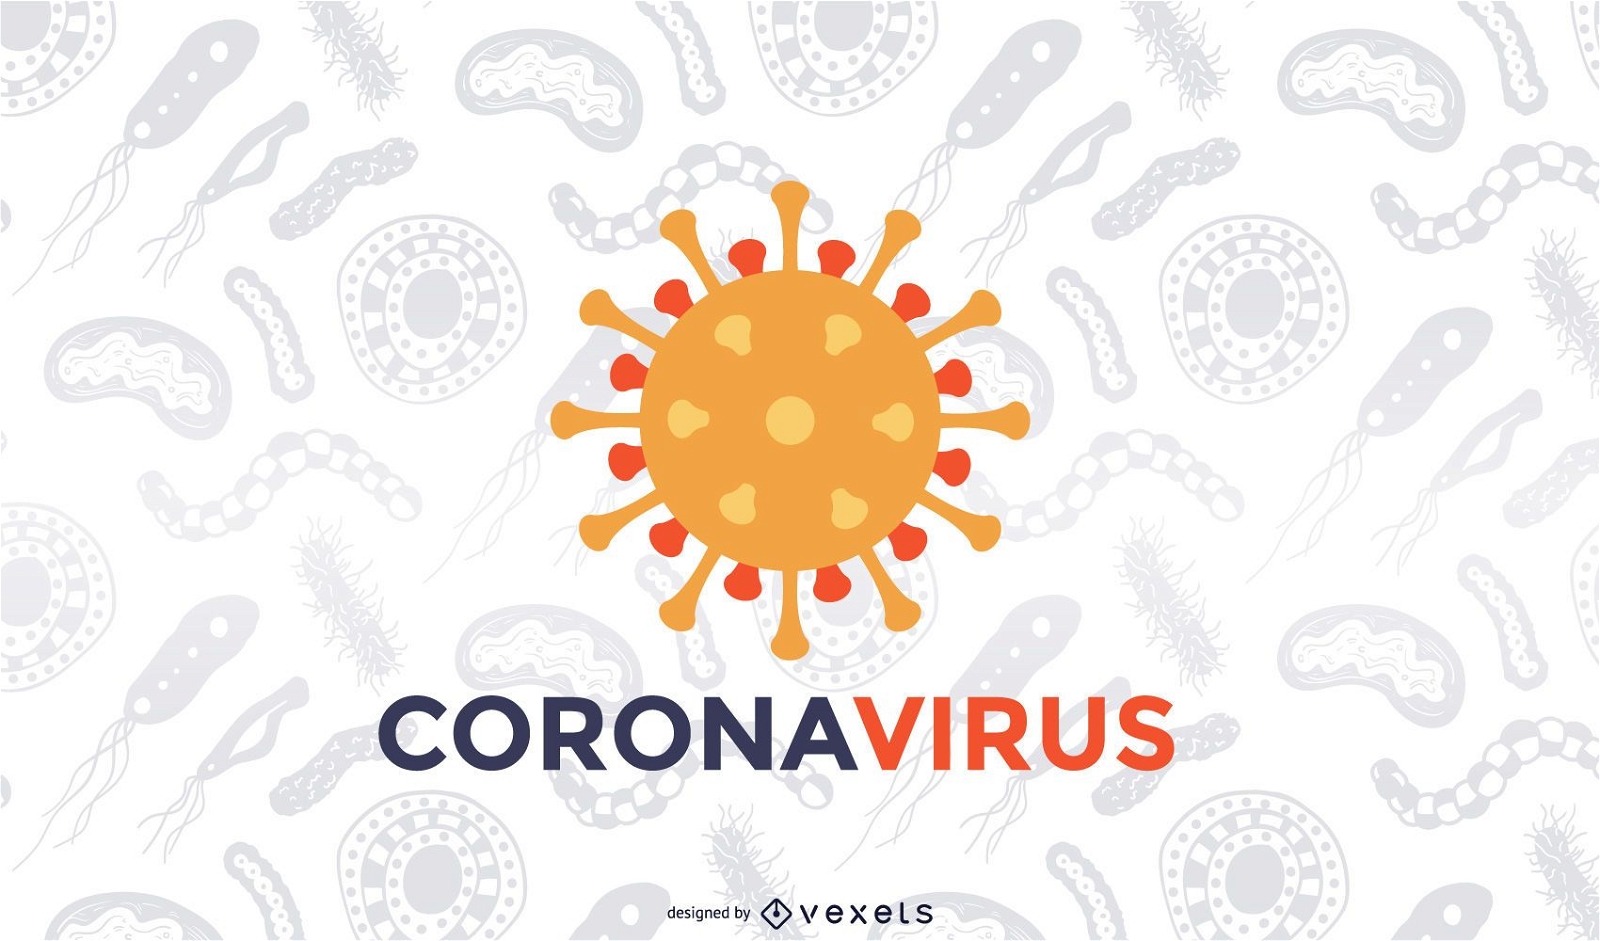 Coronavirus Covid-19 background